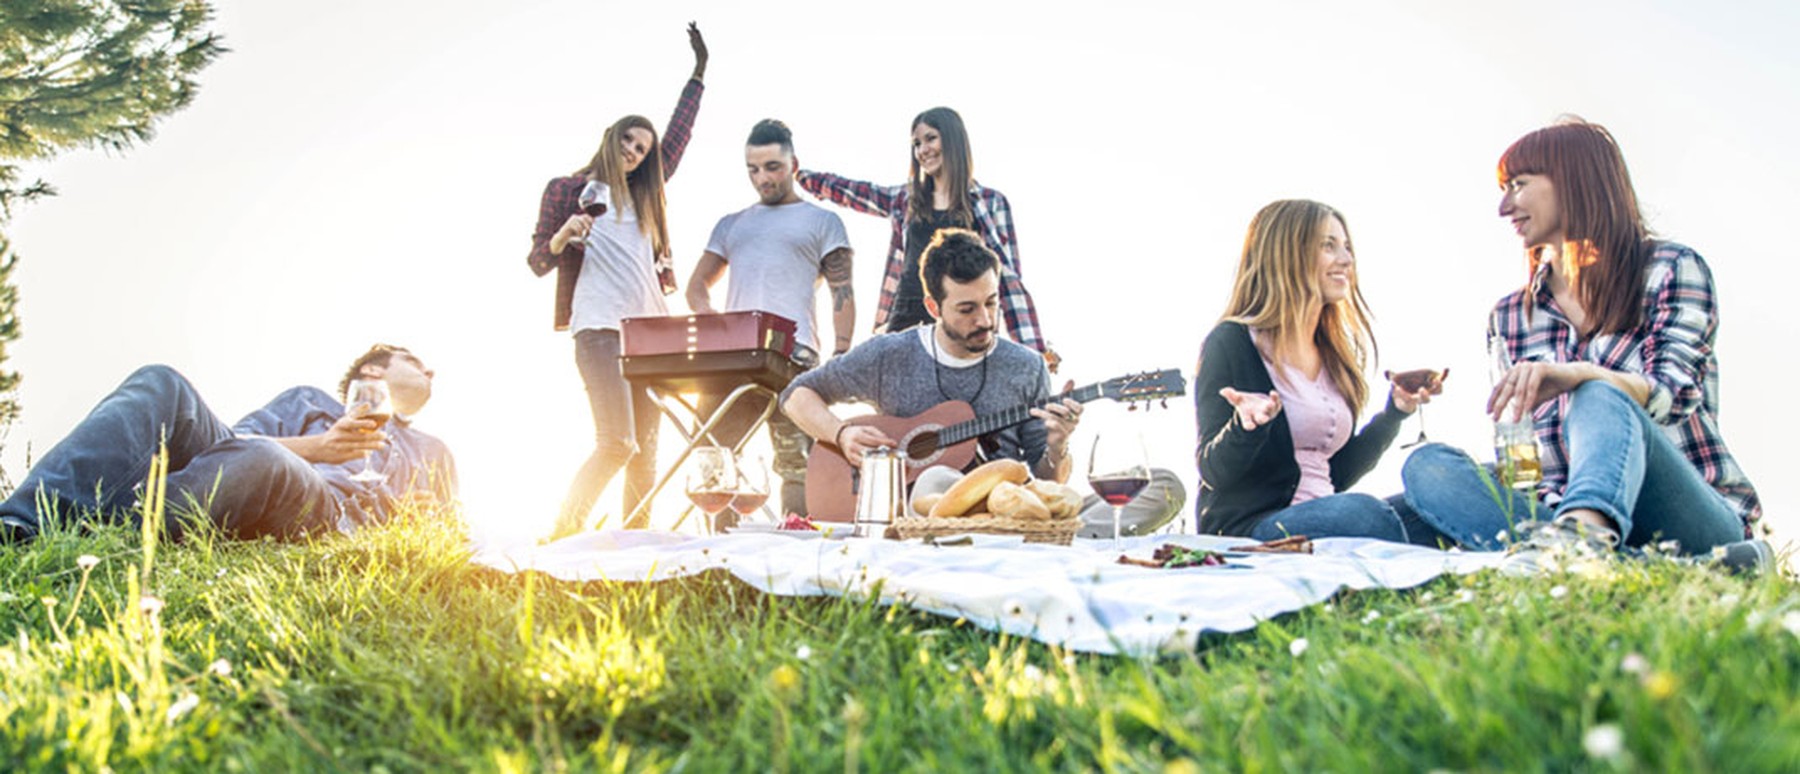 Een groepje vrienden die buiten muziek en plezier maakt tijdens een picknick